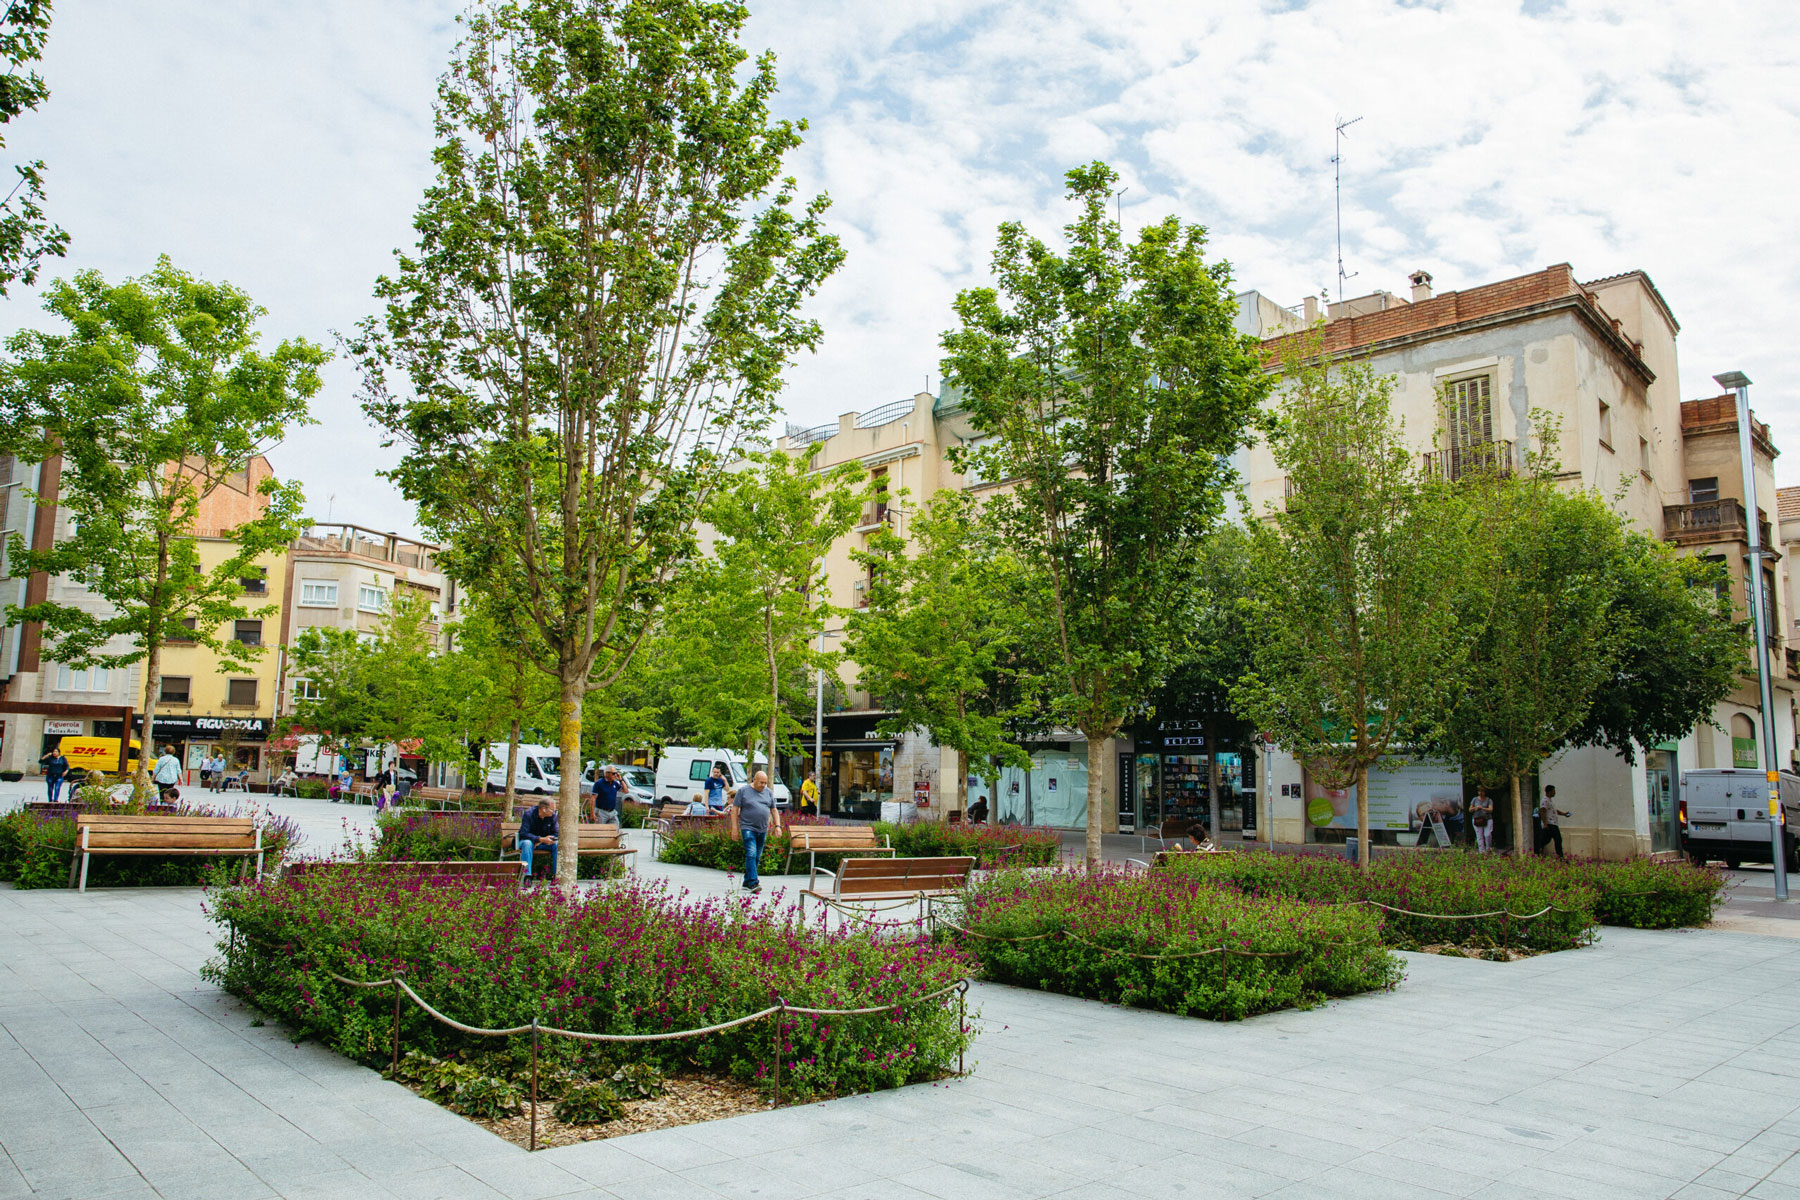 Foto del proyecto Passeig Plaça Major Sabadell realizado por Green Effect